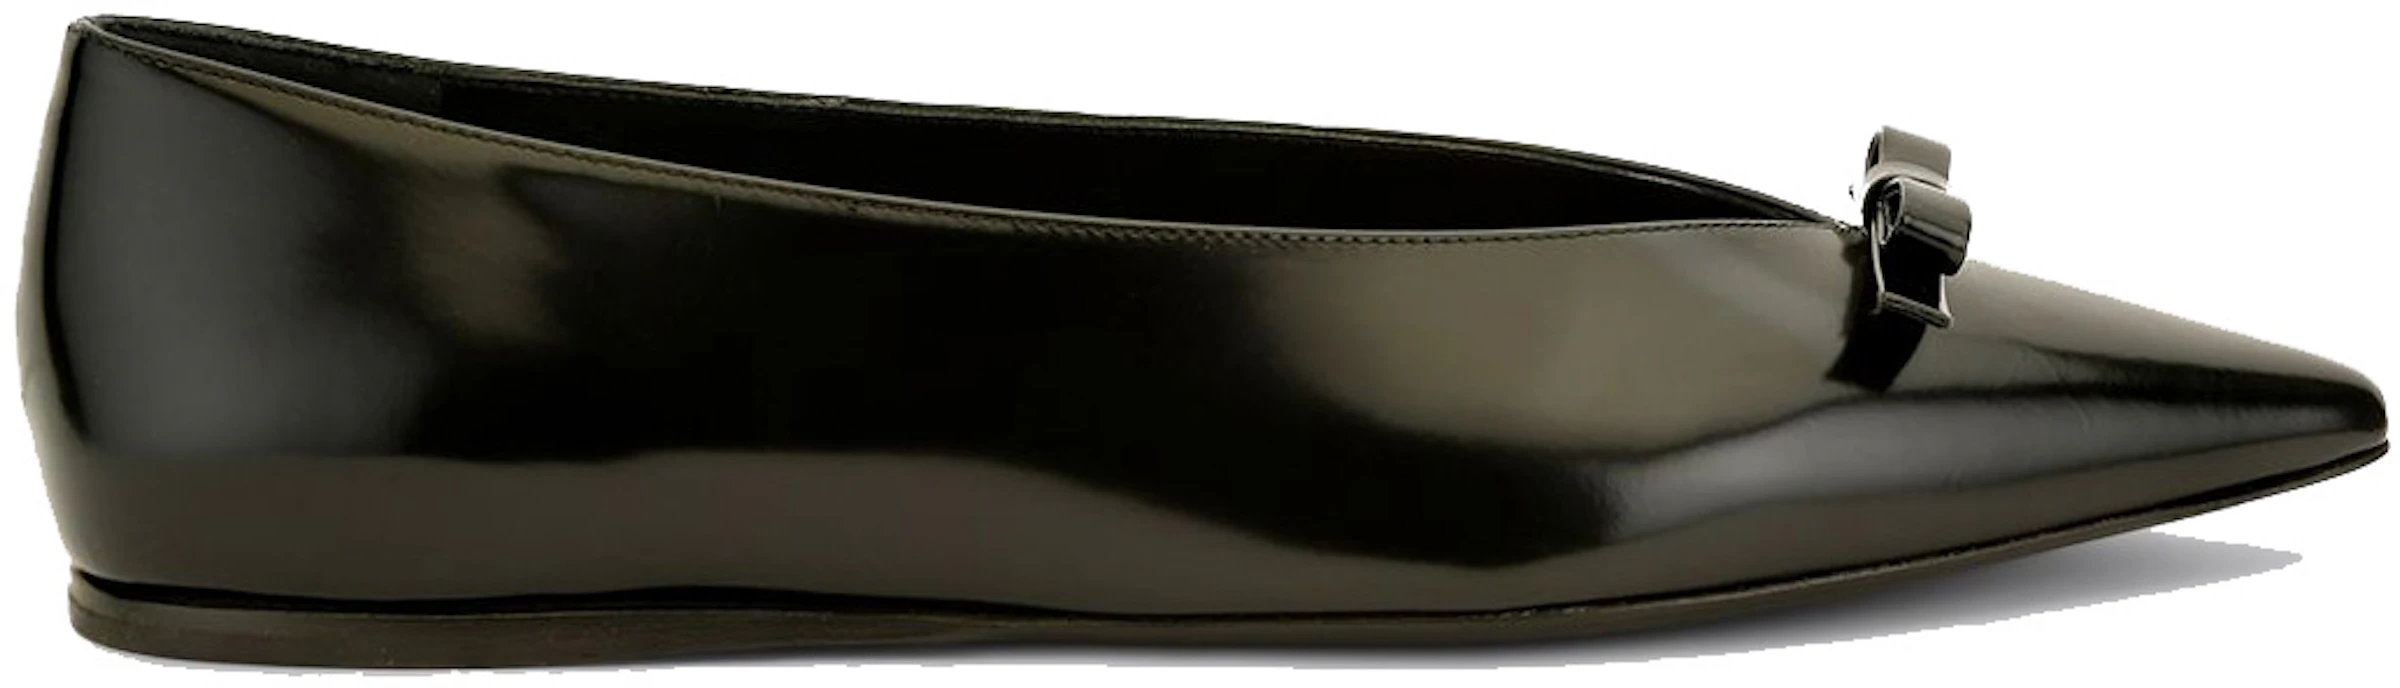 Prada Black Bow Flats Black Patent Leather - 1F511M 055 F A005 - US